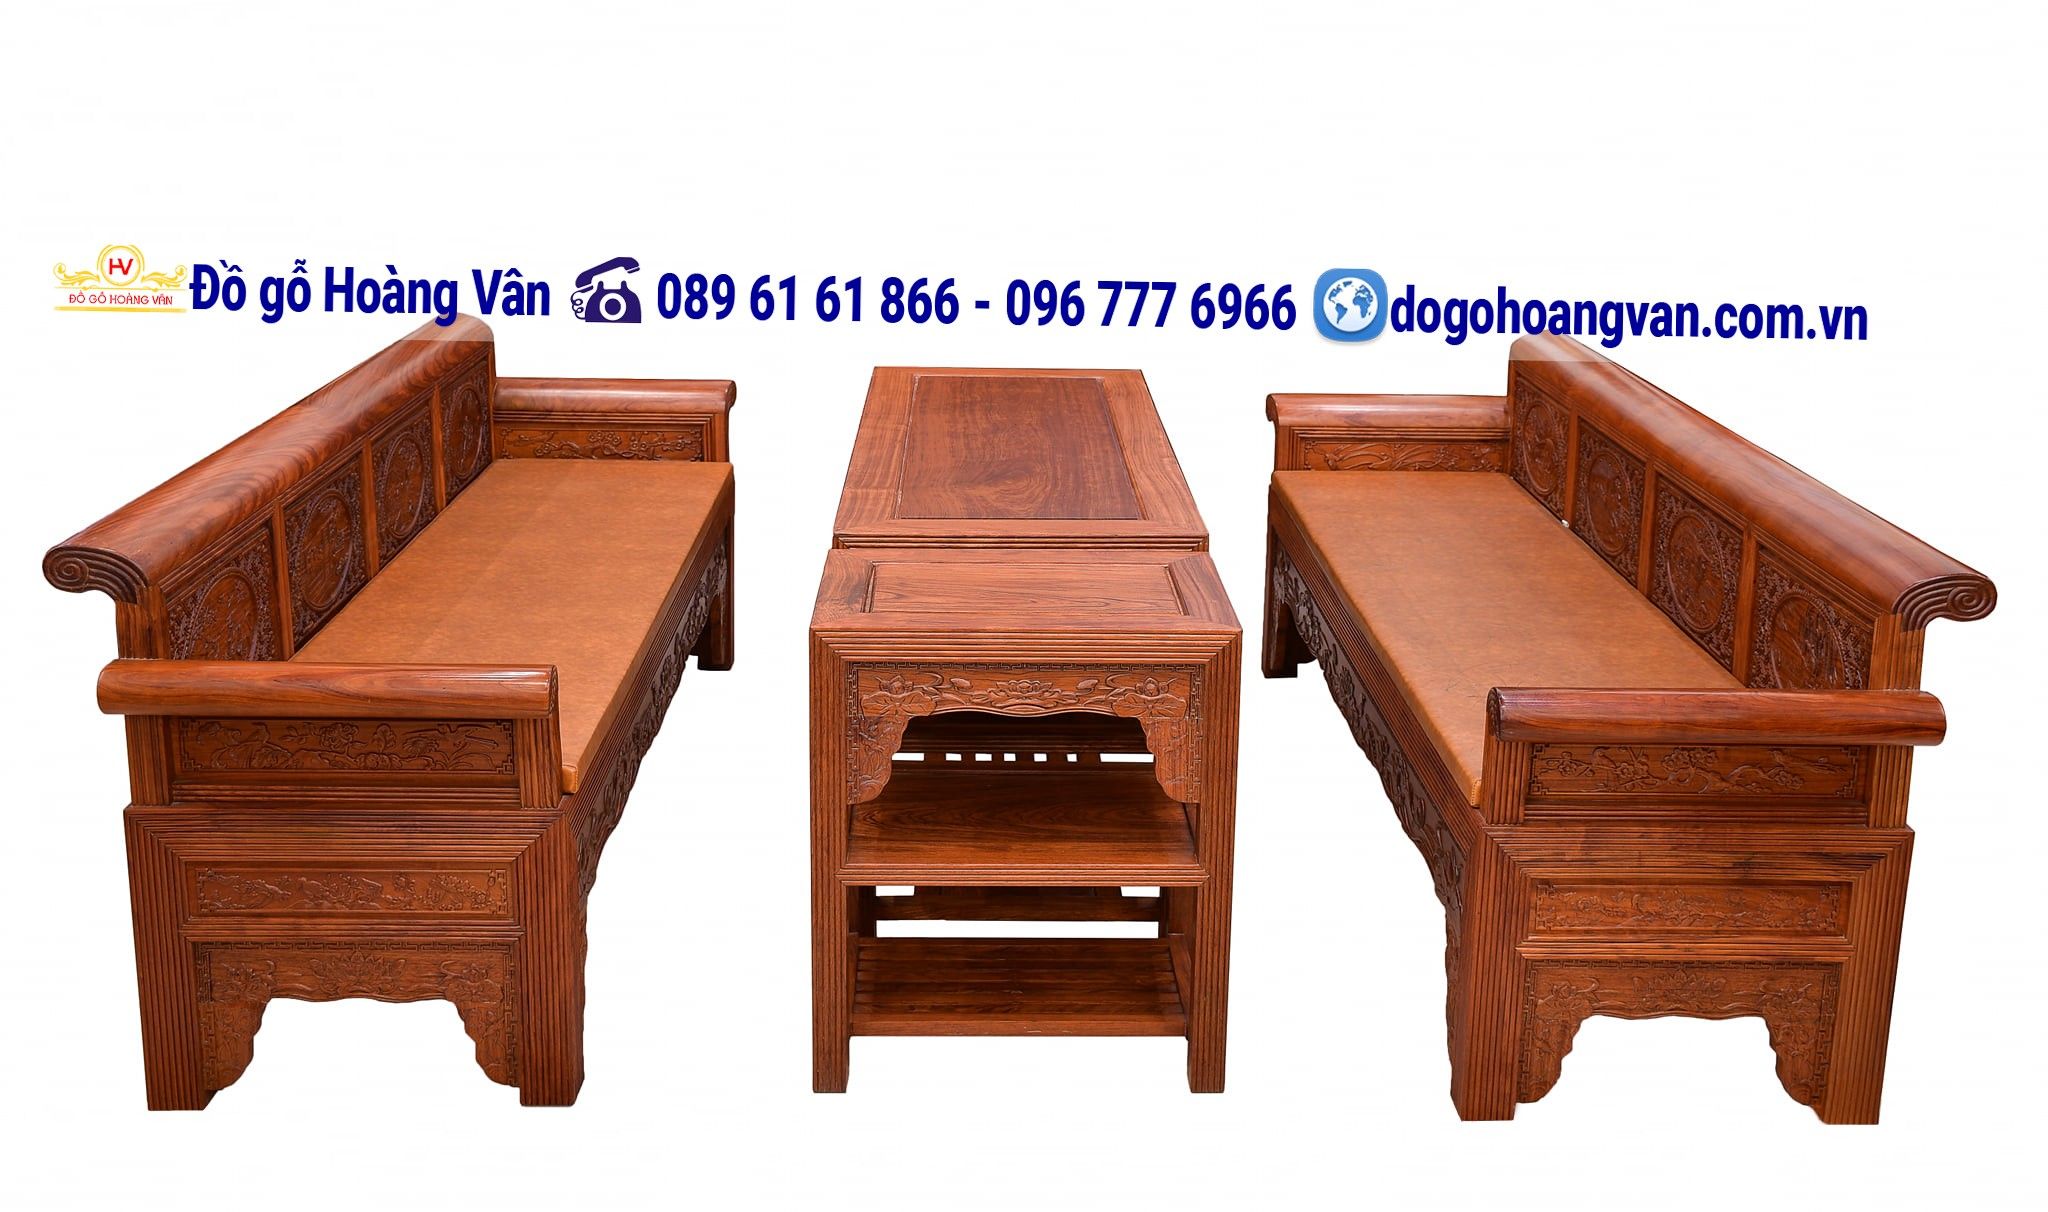 Bộ bàn ghế phòng khách gỗ hương kiểu dáng mới BG243 – Đồ gỗ Hoàng Vân